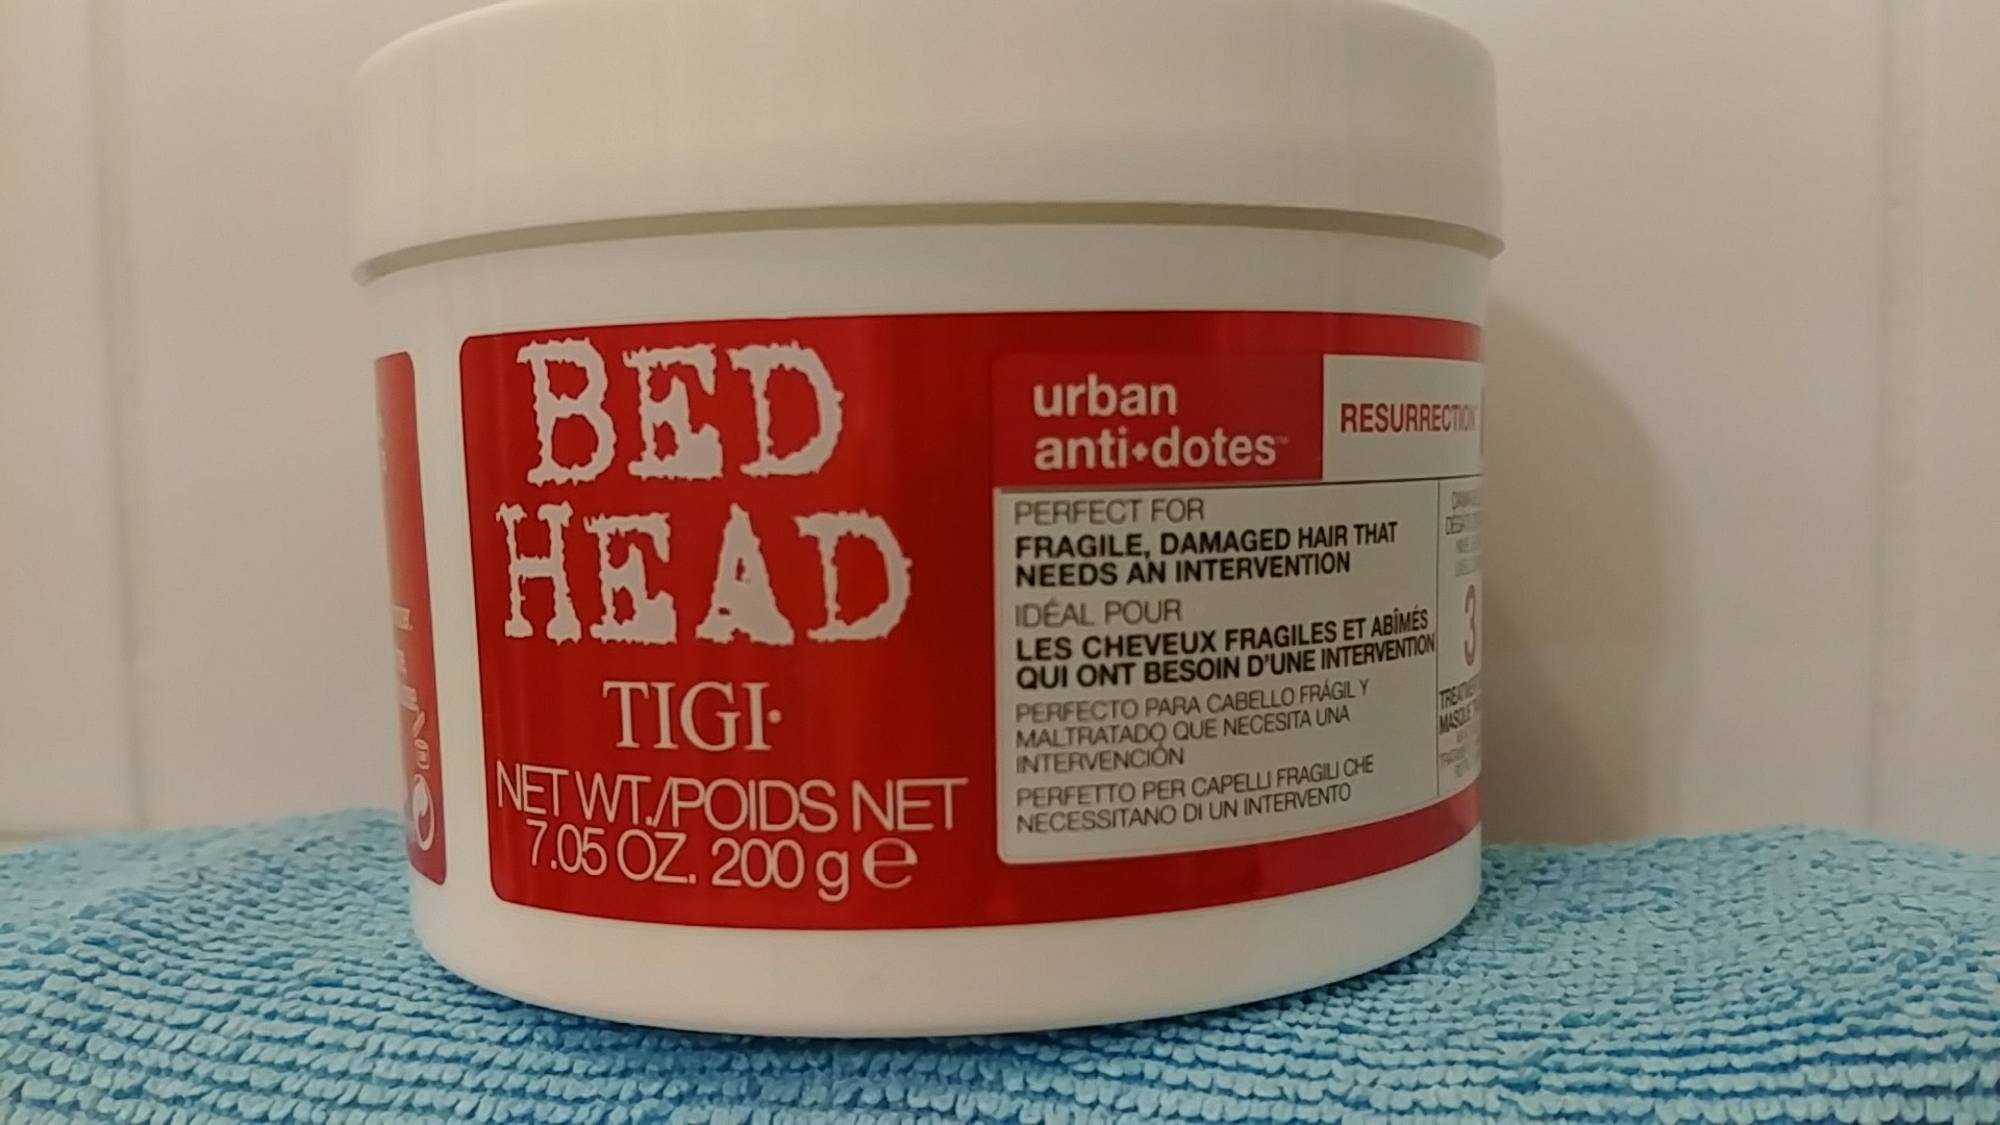 TIGI - Bed head urban anti-dotes ressurection